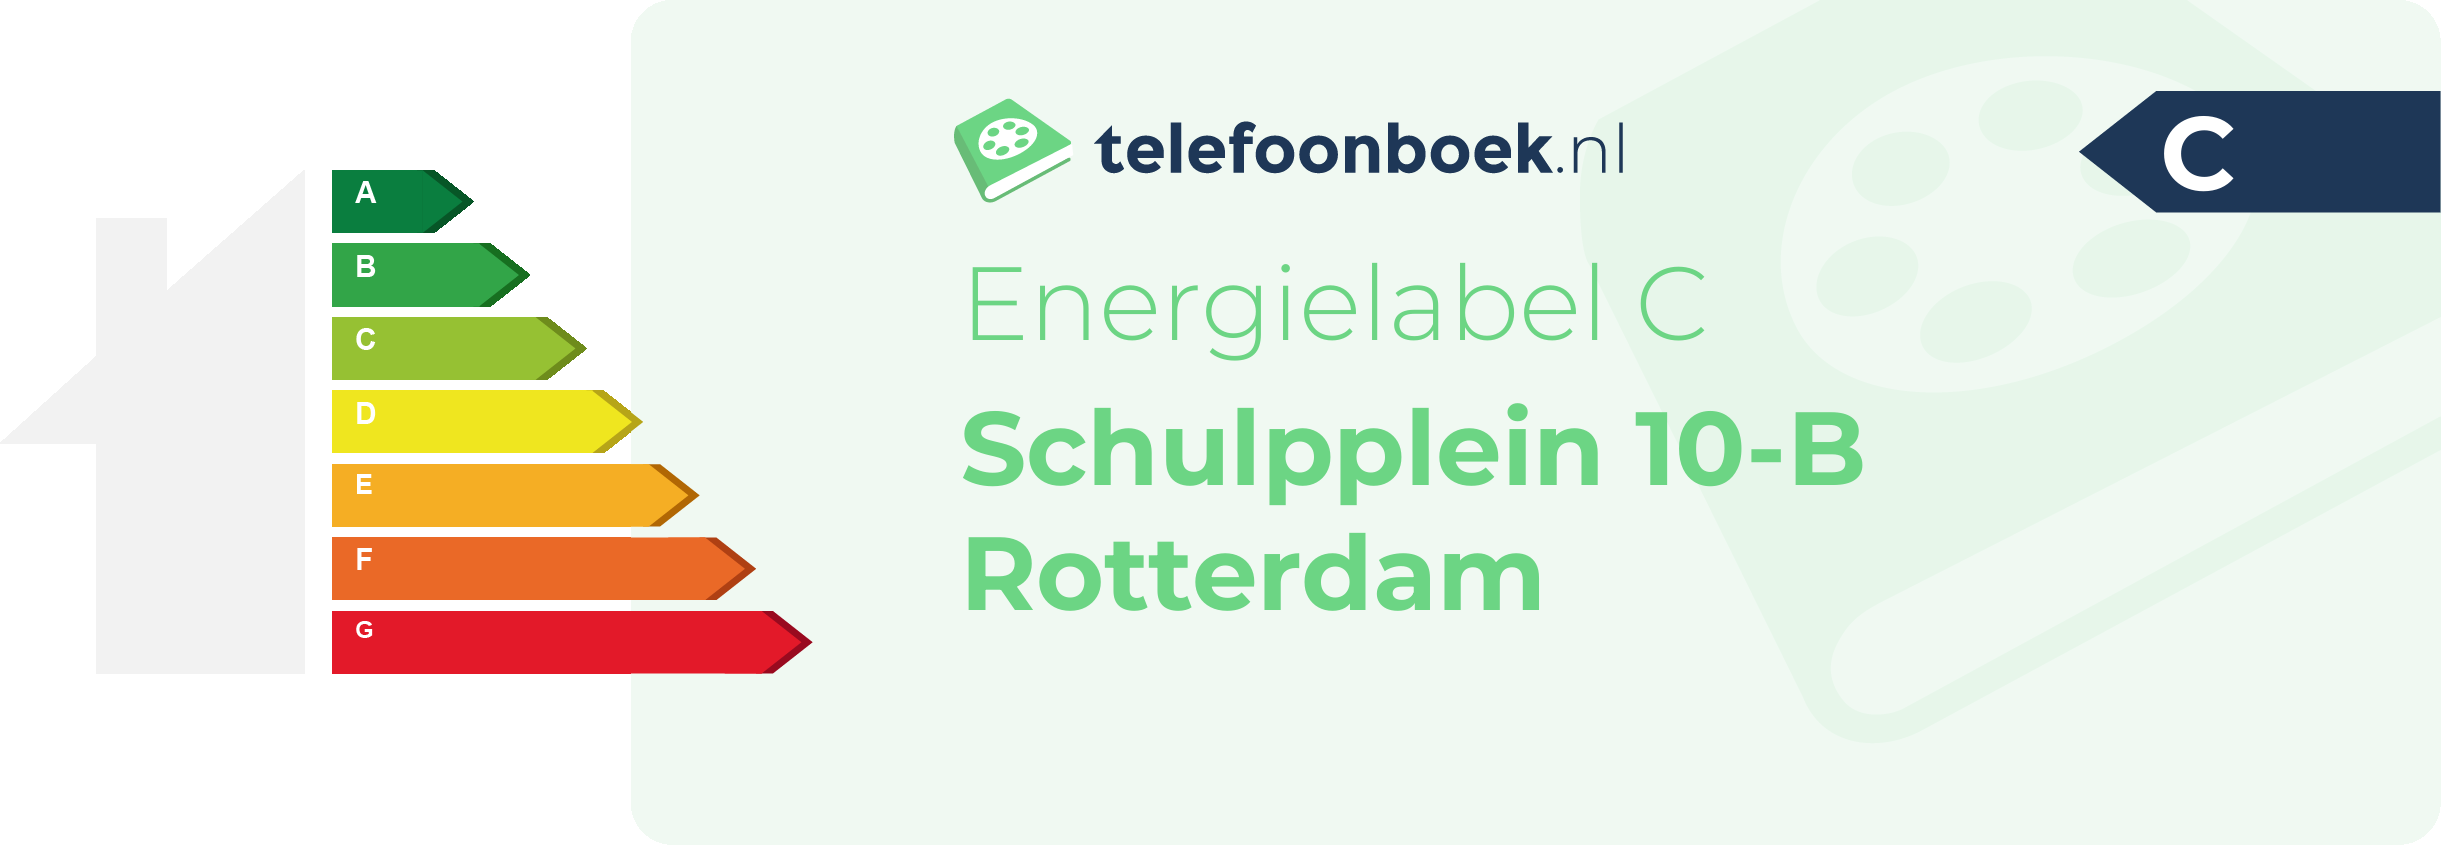 Energielabel Schulpplein 10-B Rotterdam